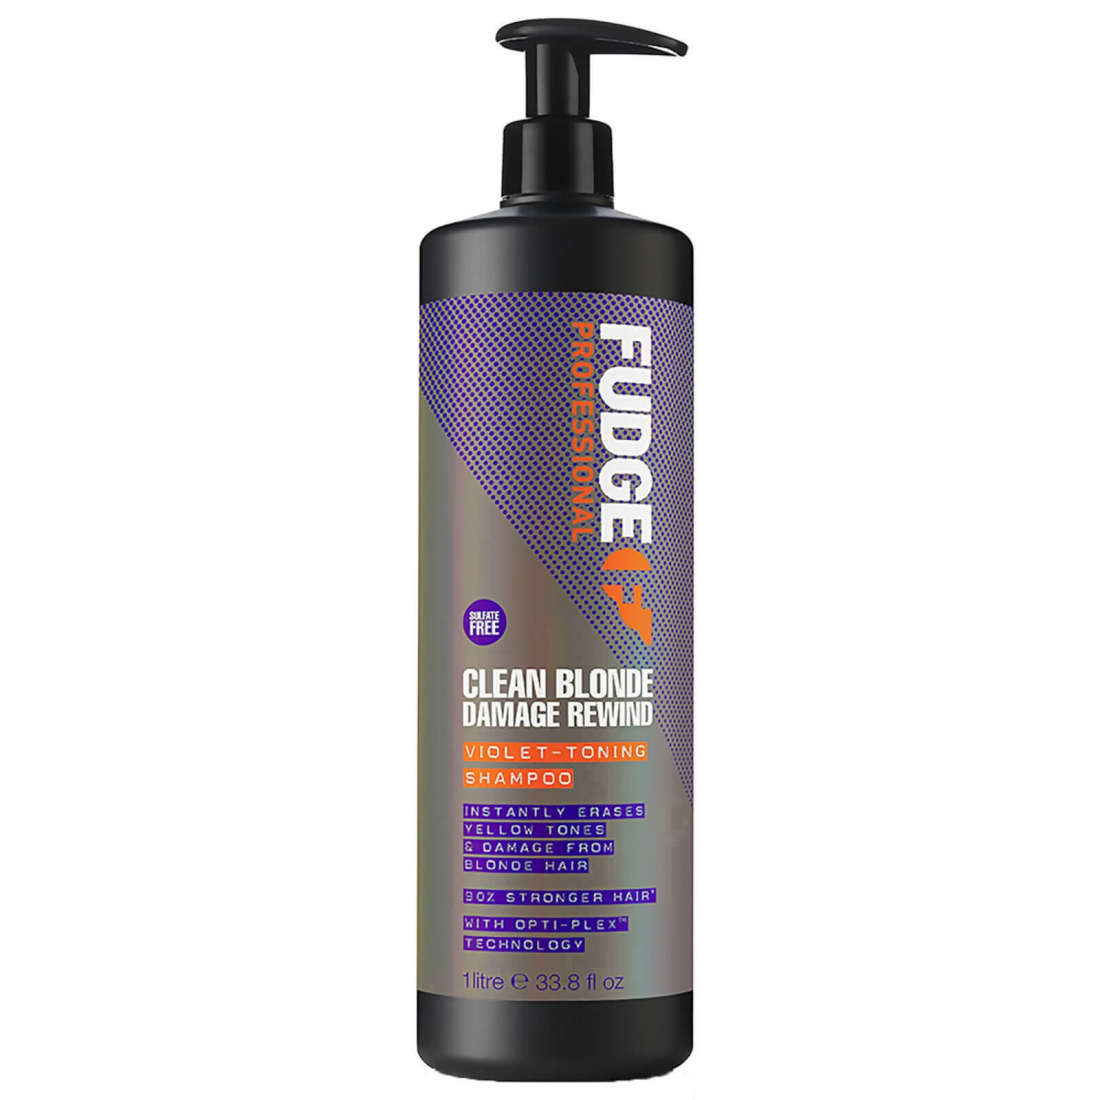 'Clean Blonde Damage Rewind Violet-Toning' Shampoo - 1 L